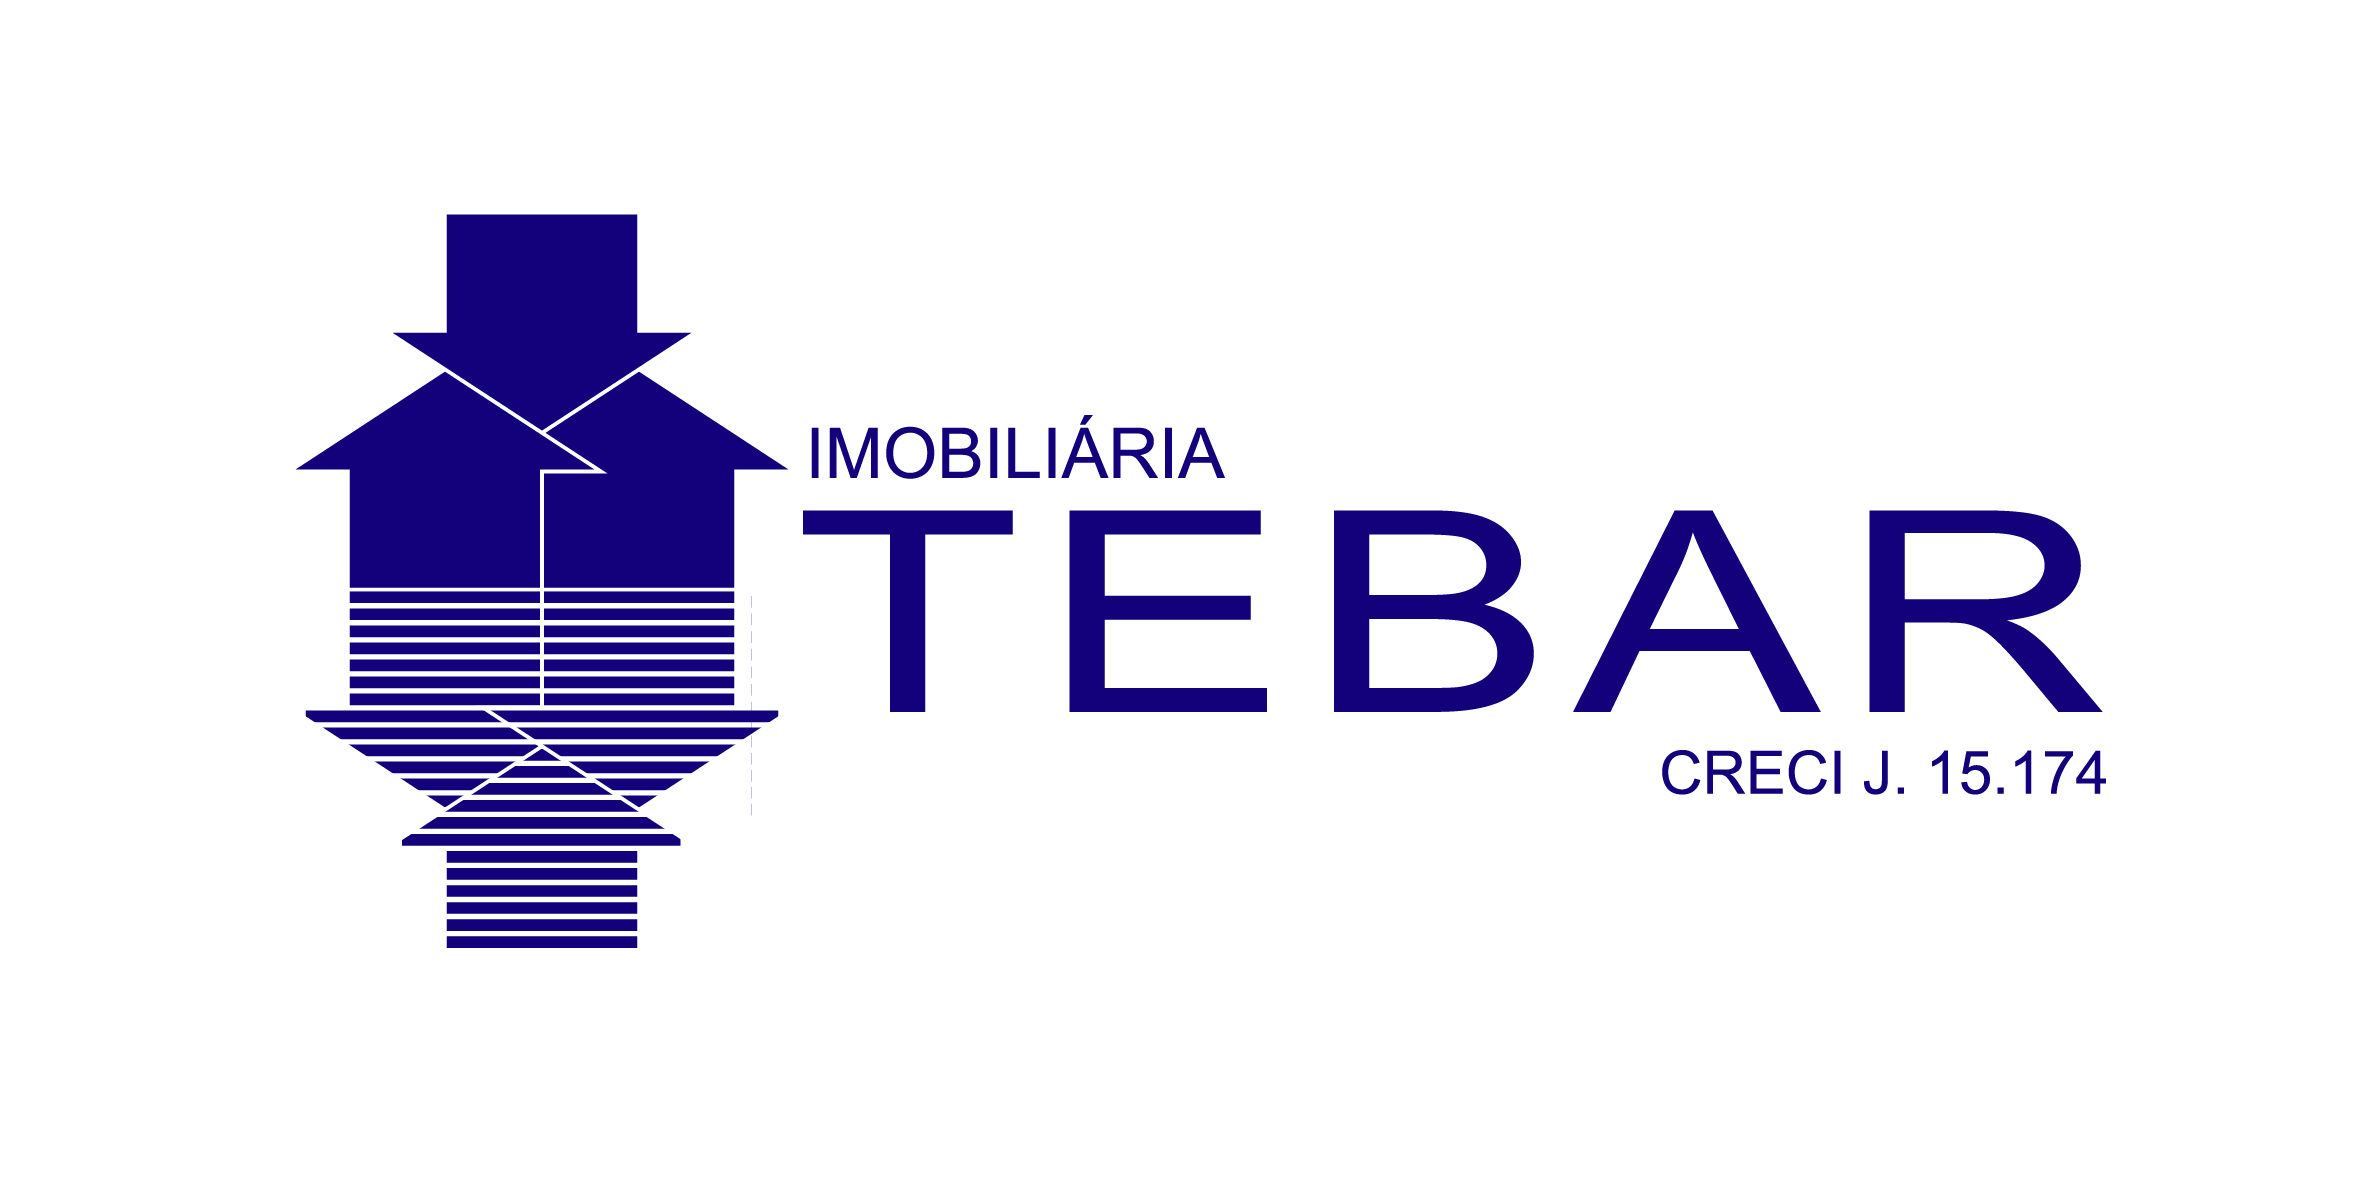 (c) Tebar.com.br